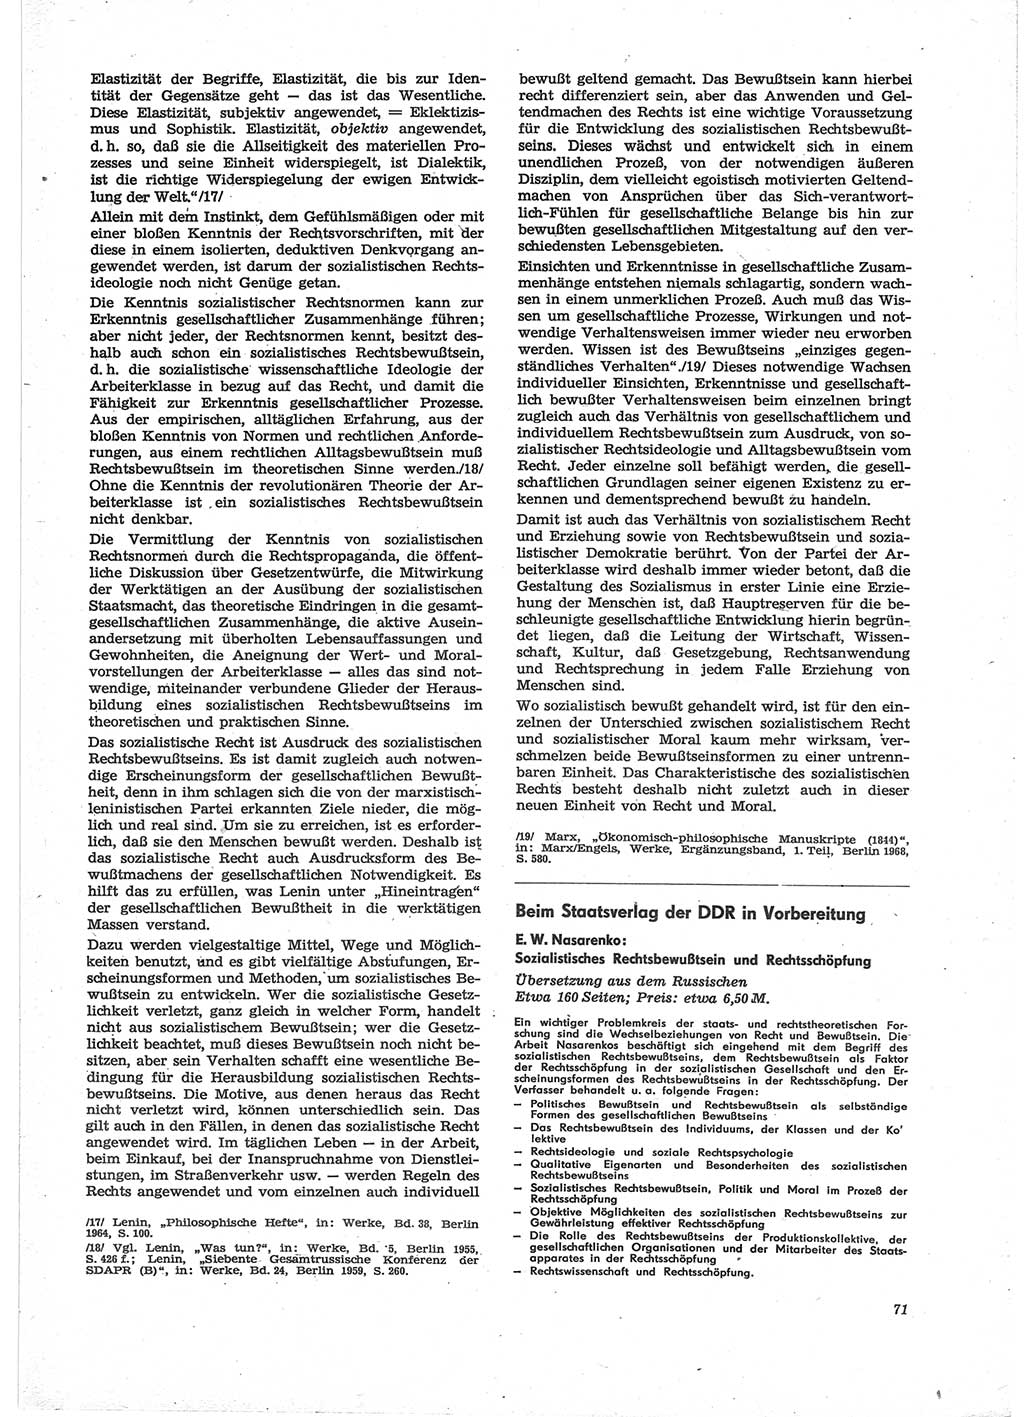 Neue Justiz (NJ), Zeitschrift für Recht und Rechtswissenschaft [Deutsche Demokratische Republik (DDR)], 28. Jahrgang 1974, Seite 71 (NJ DDR 1974, S. 71)